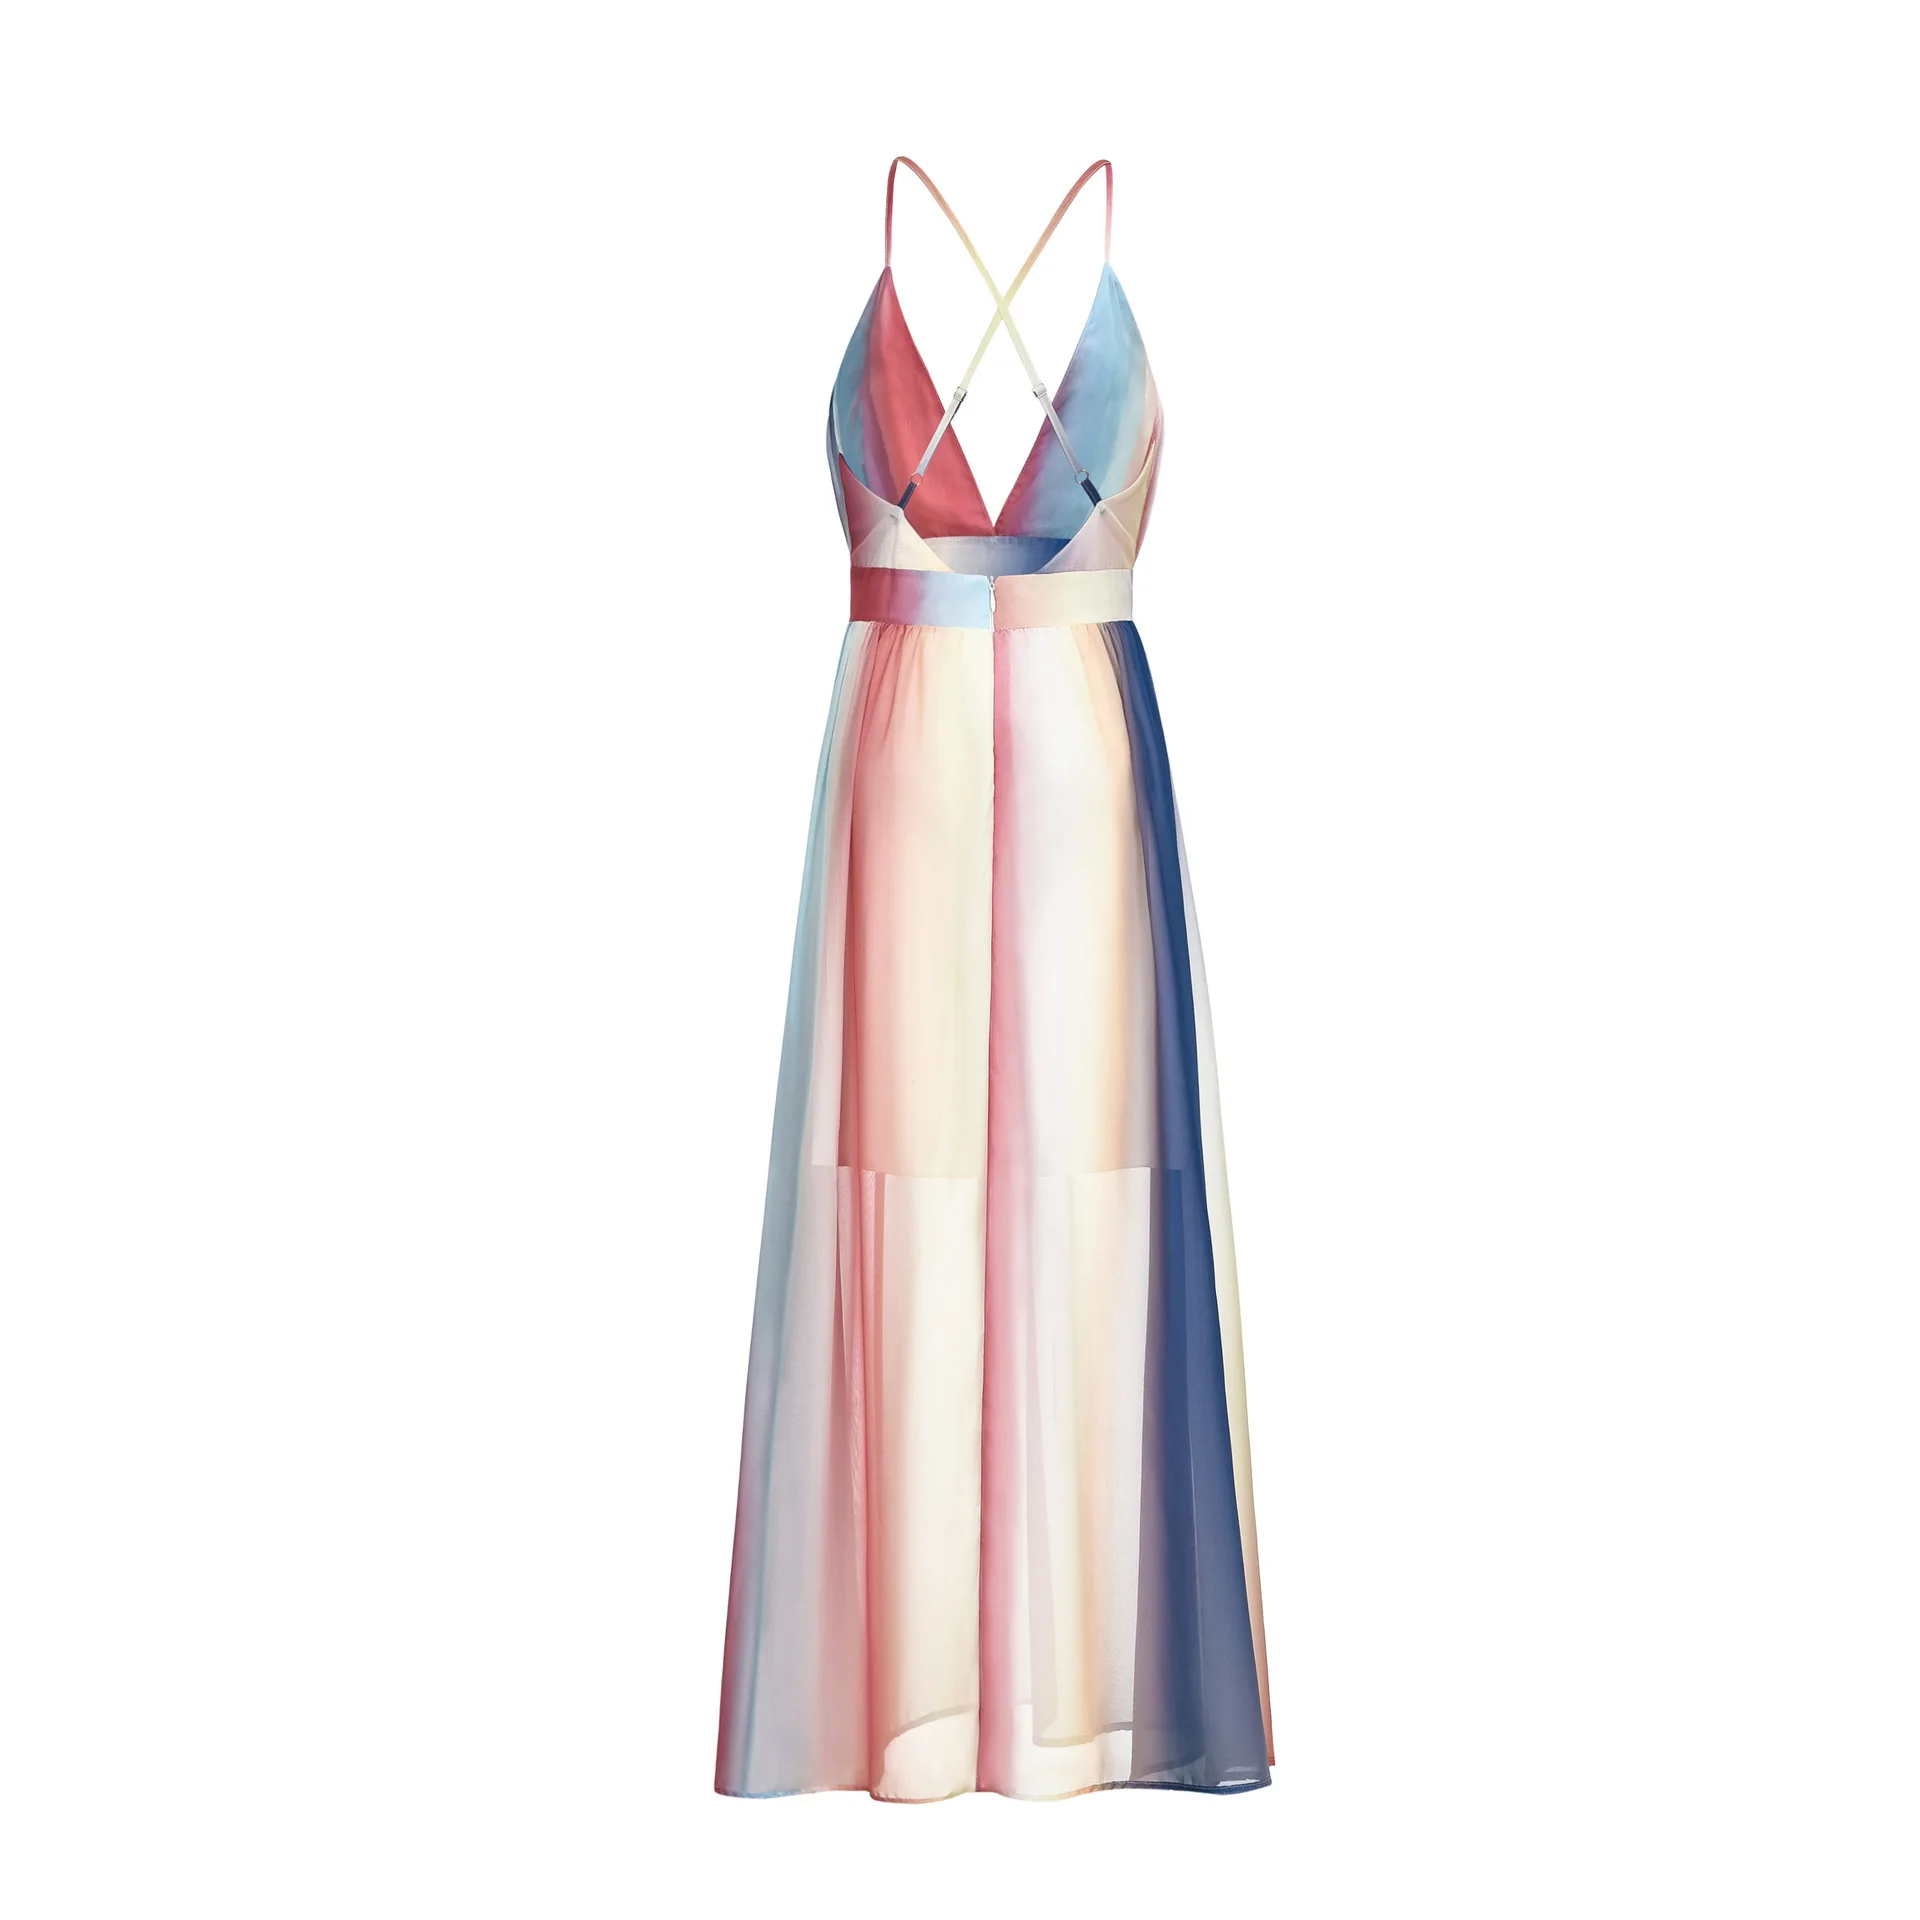 2020 длинное полуофициальное платье с градиентом радужной расцветки, крест-накрест на спине, длина в пол, повседневная одежда от AliExpress WW